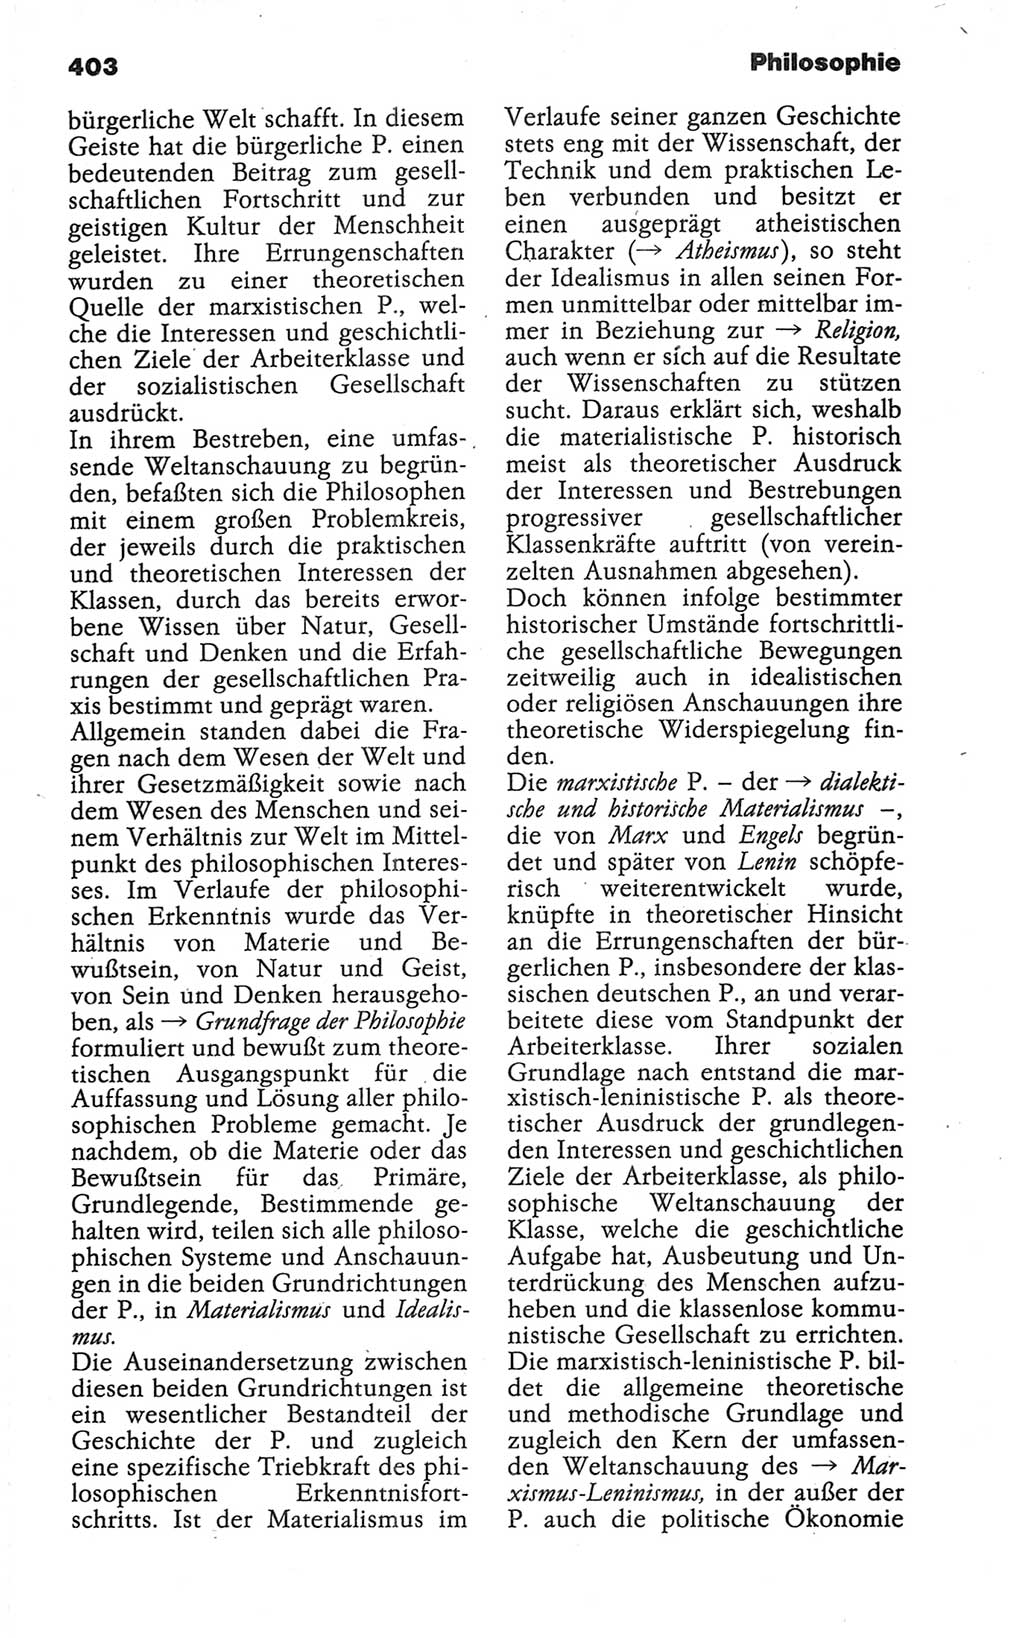 Wörterbuch der marxistisch-leninistischen Philosophie [Deutsche Demokratische Republik (DDR)] 1986, Seite 403 (Wb. ML Phil. DDR 1986, S. 403)